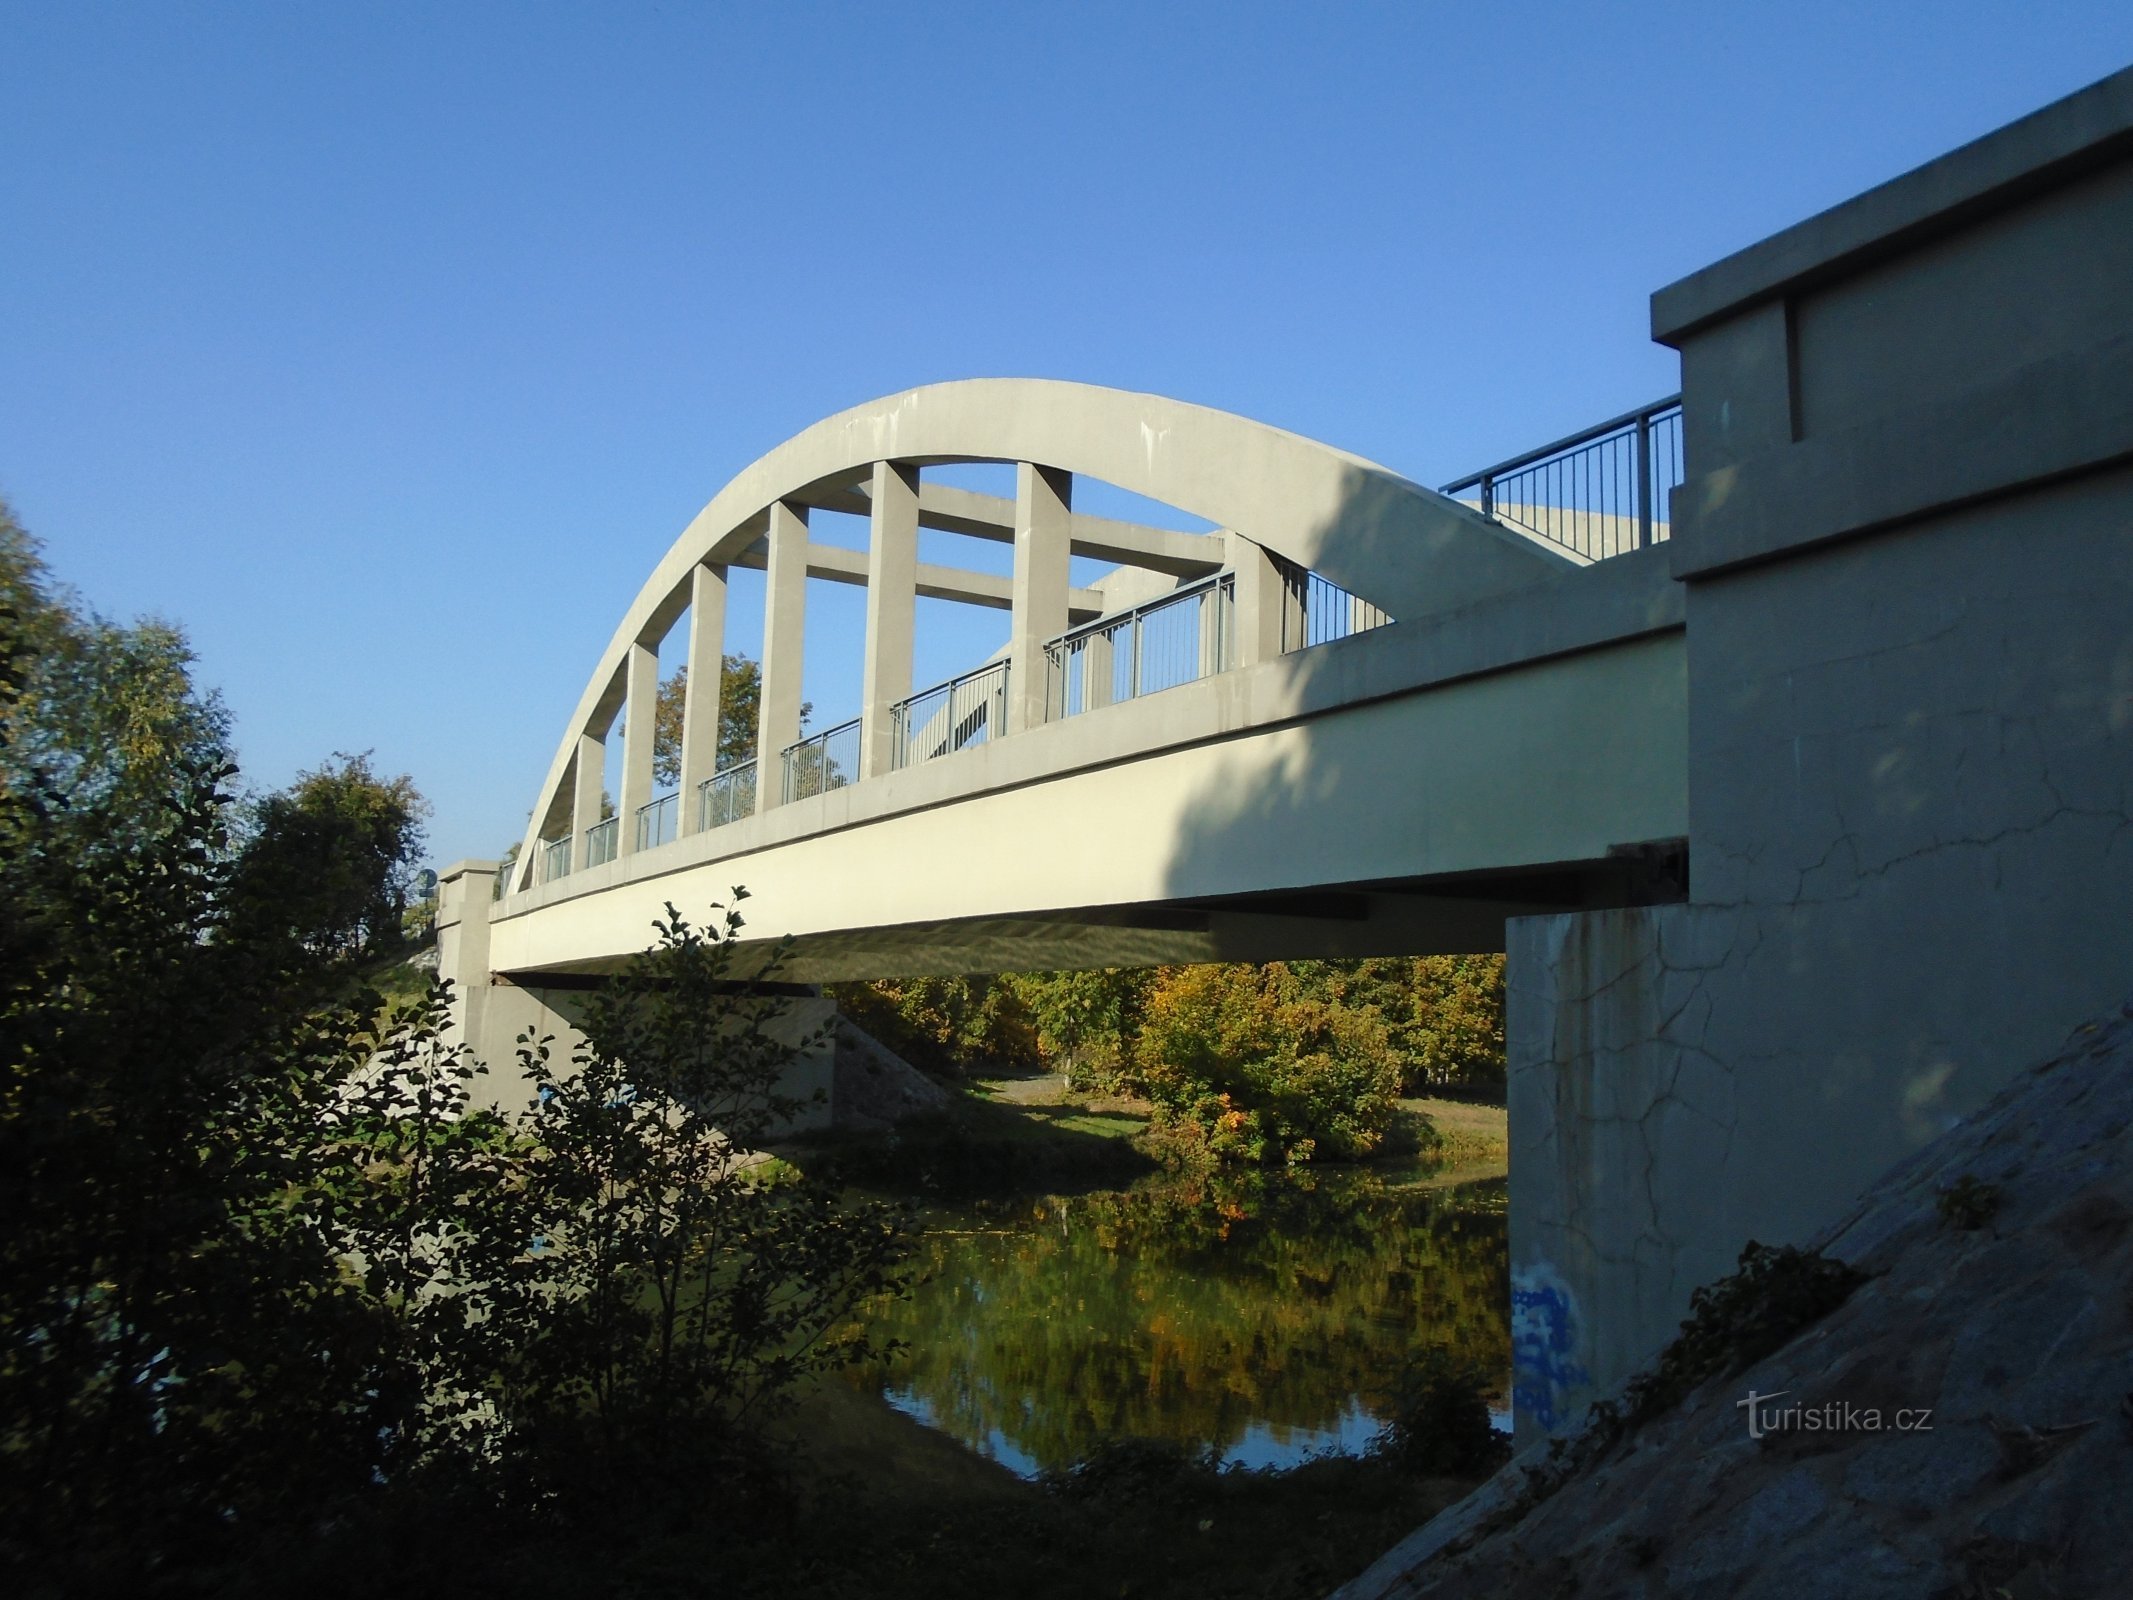 Puente sobre el Elba (Černožice, 10.10.2018/XNUMX/XNUMX)